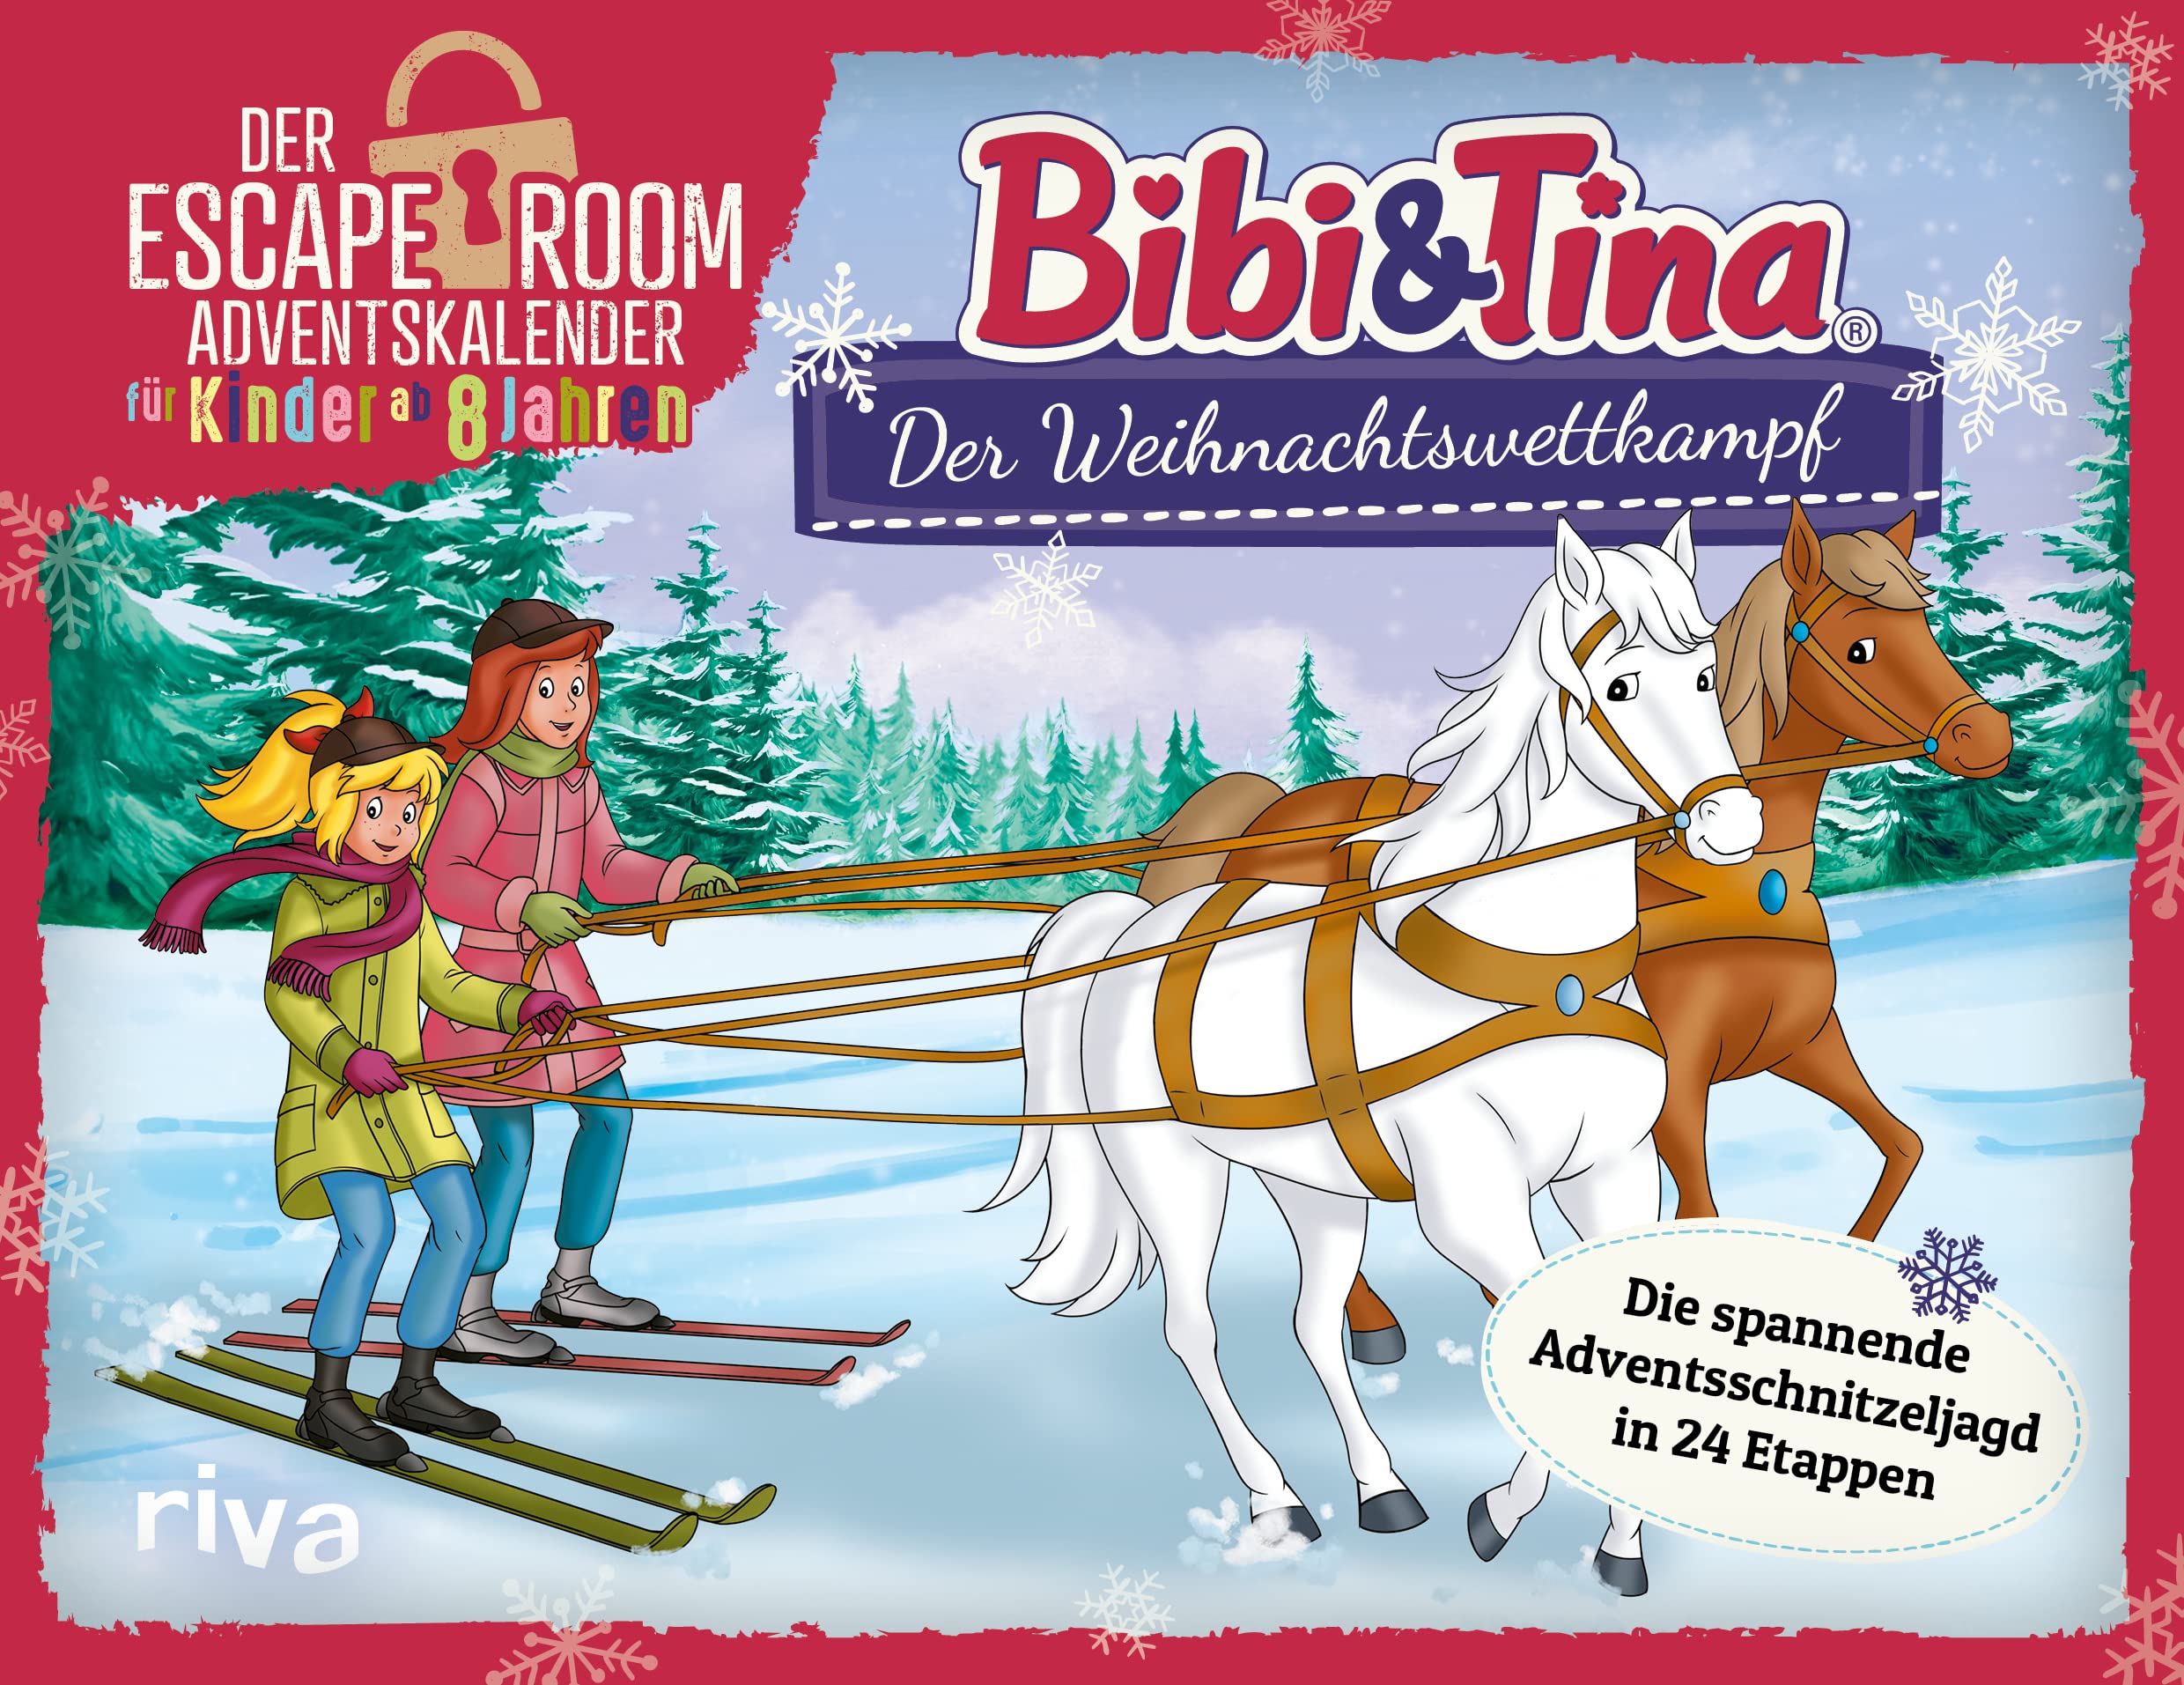 Bibi & Tina – Der Weihnachtswettkampf: Die spannende Adventsschnitzeljagd in 24 Etappen. Der Escape-Room-Adventskalender für Kinder ab 8 Jahren